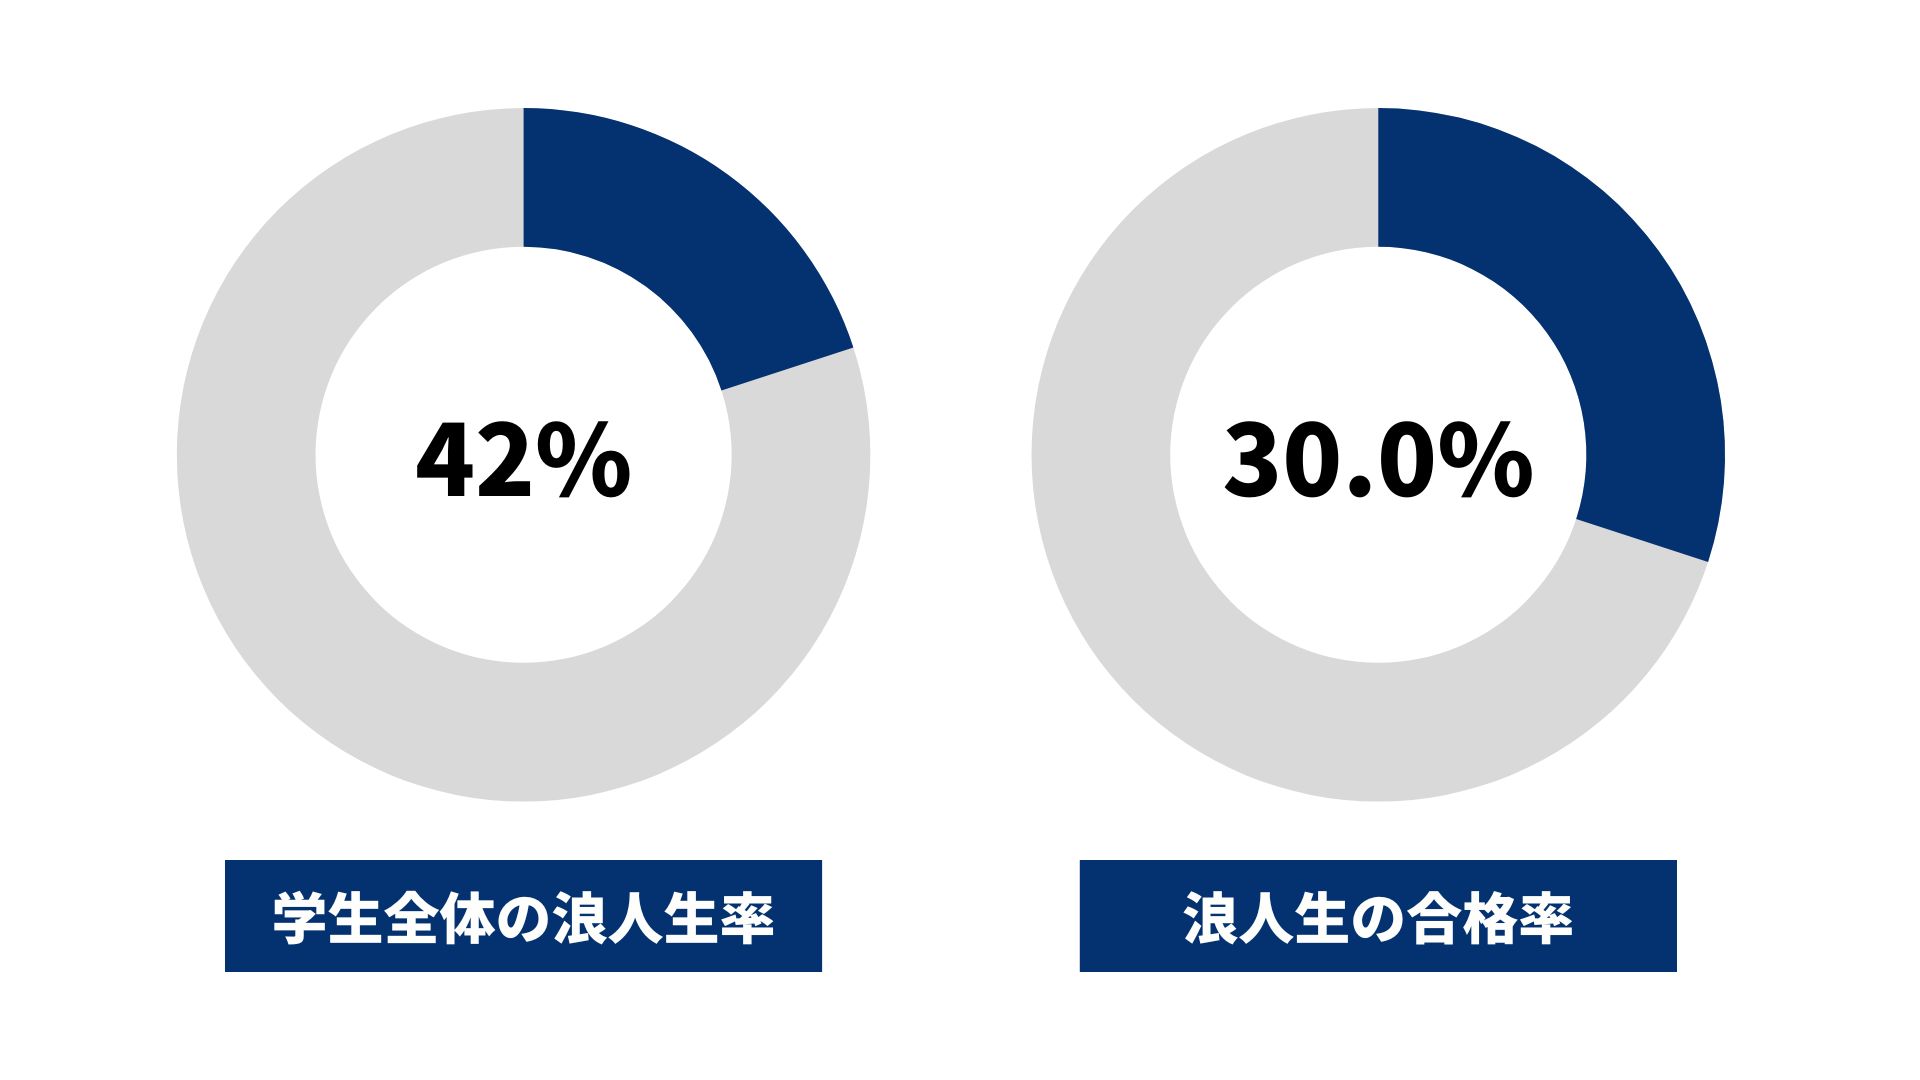 東京工業大学の浪人生の割合